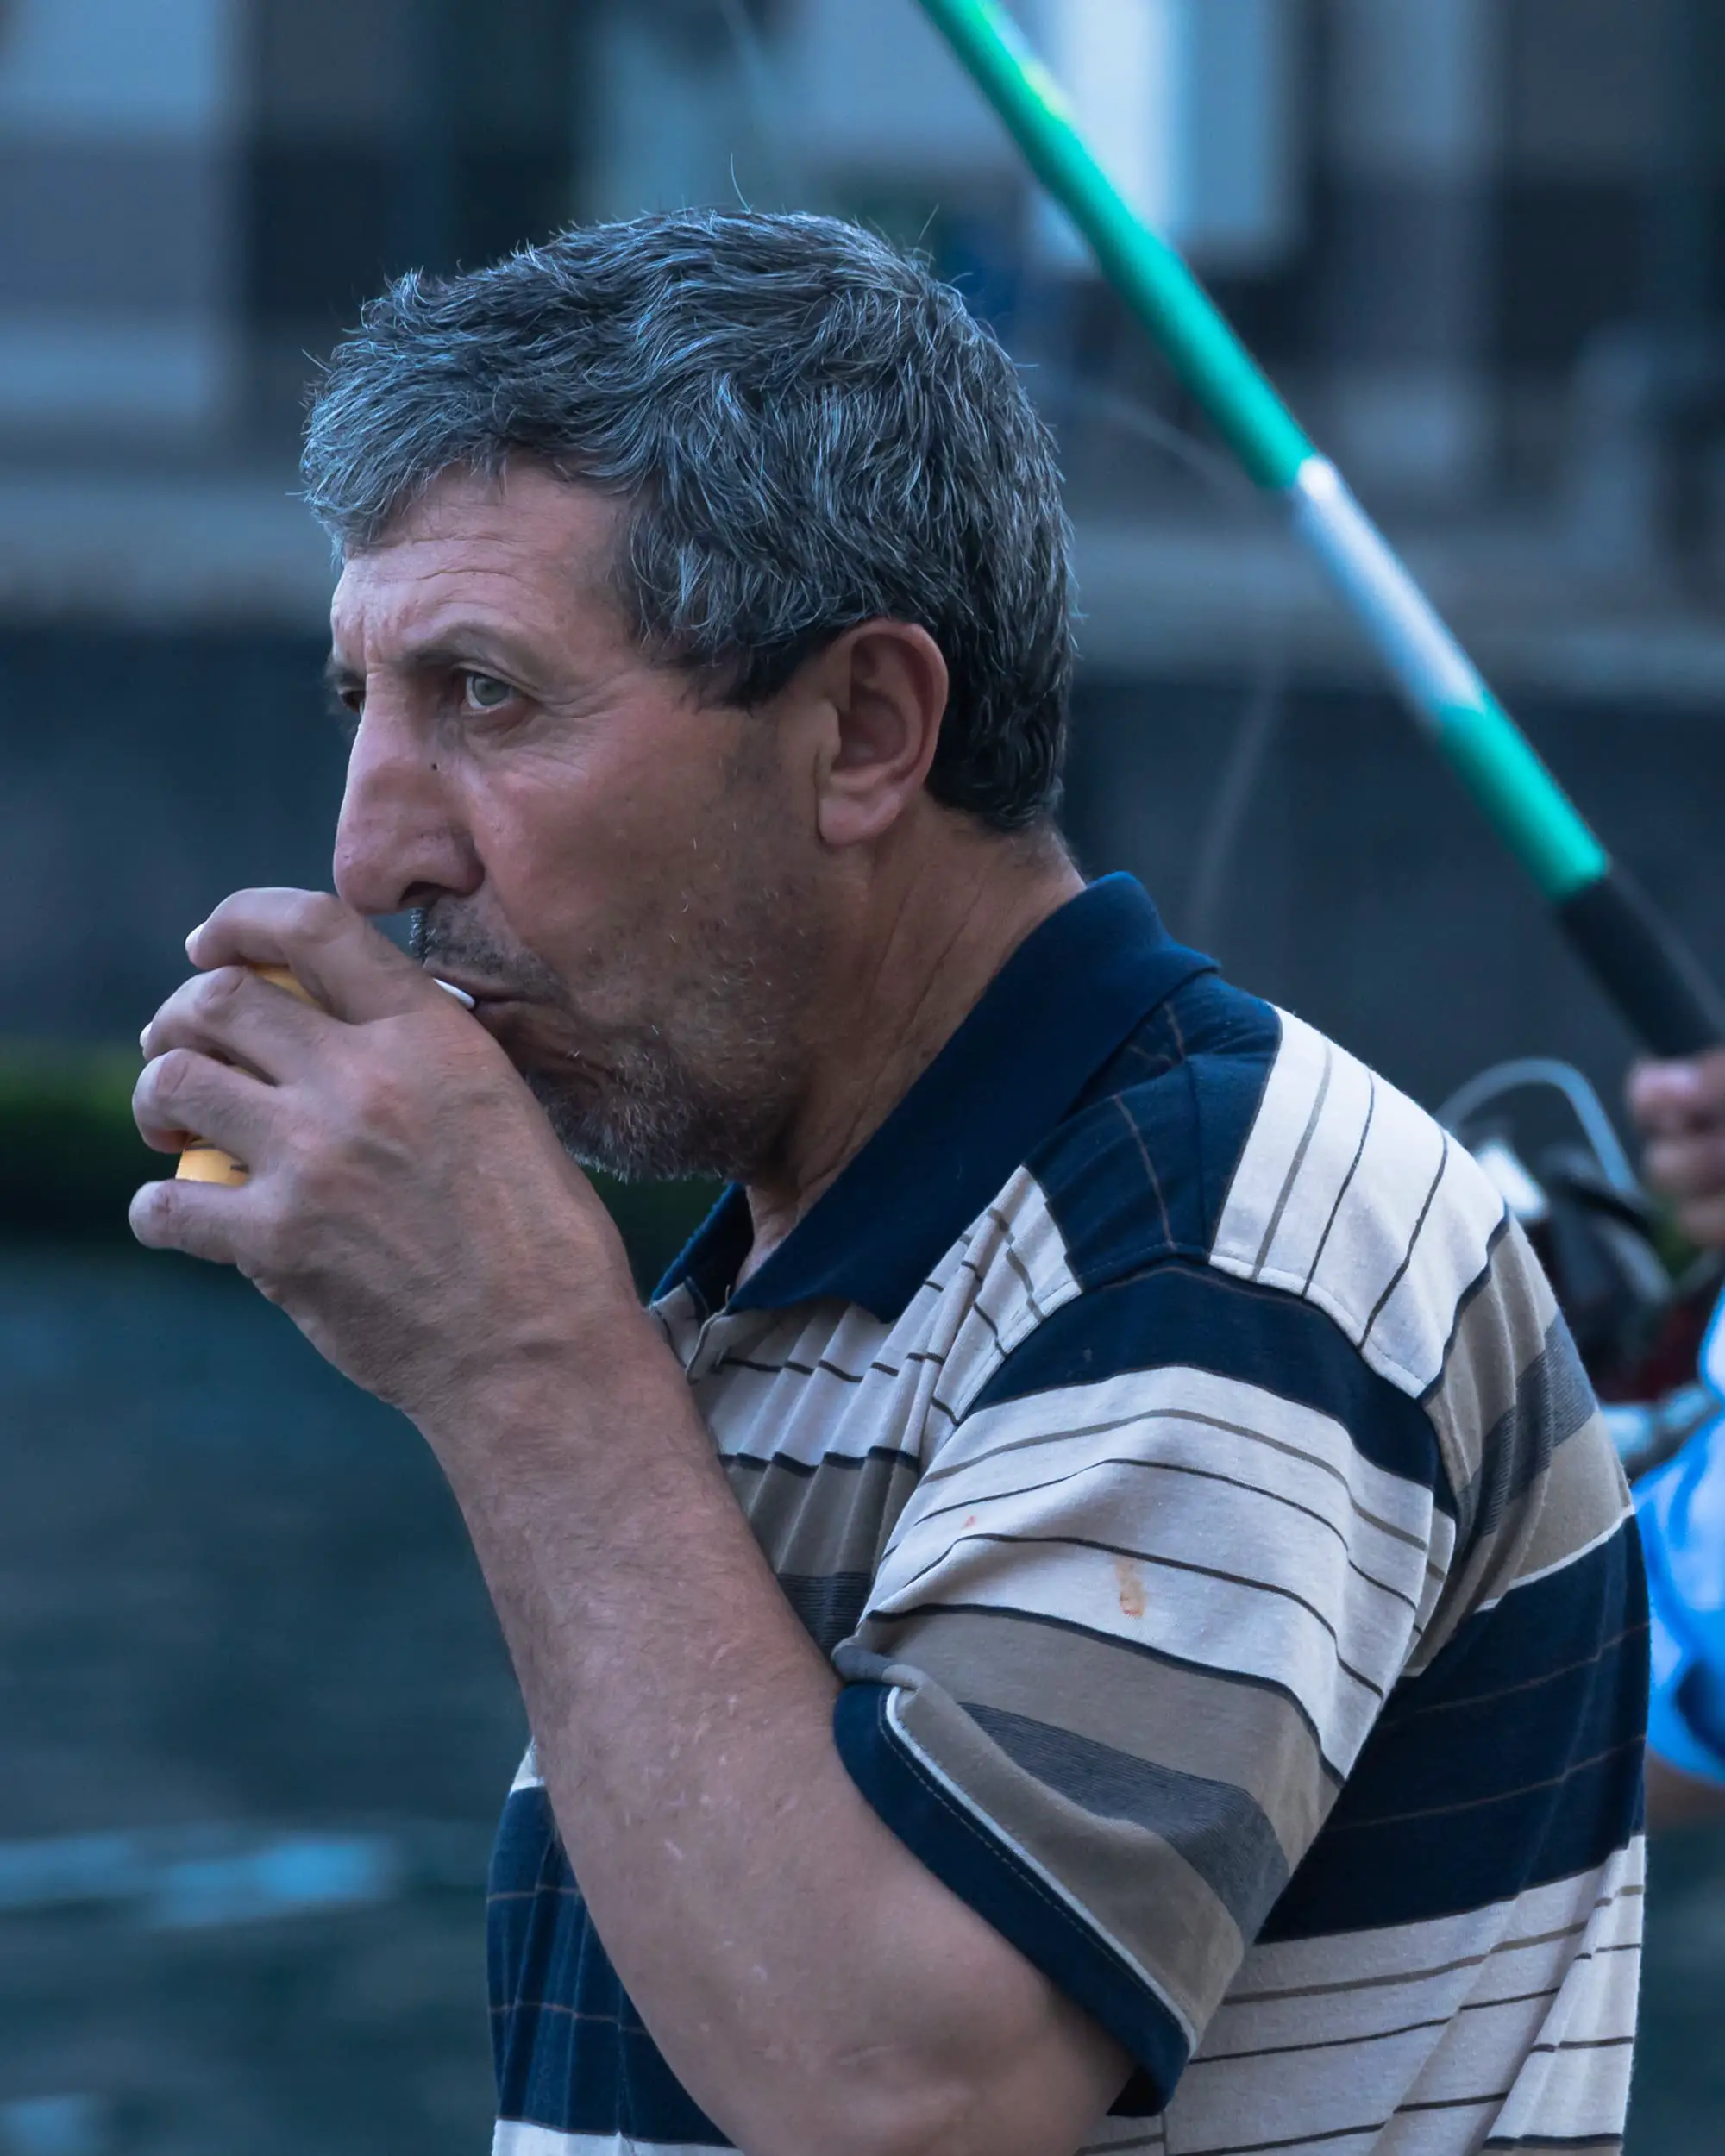 turkish fisherman drinking tea